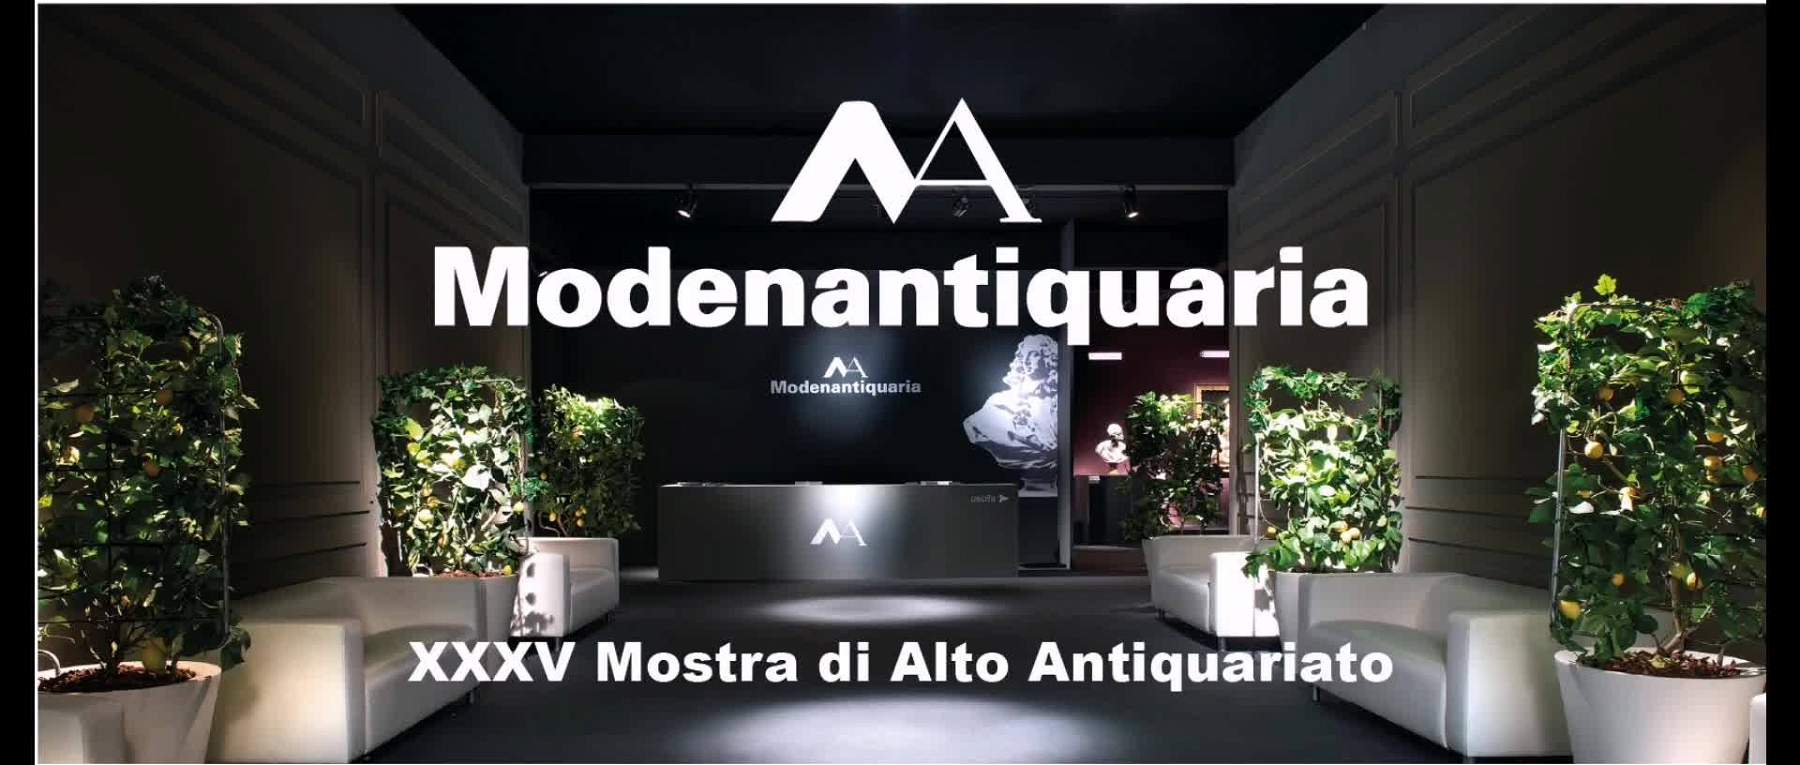 La XXXVe édition de Modenantiquaria, un événement consacré à la haute antiquité, est imminente. 